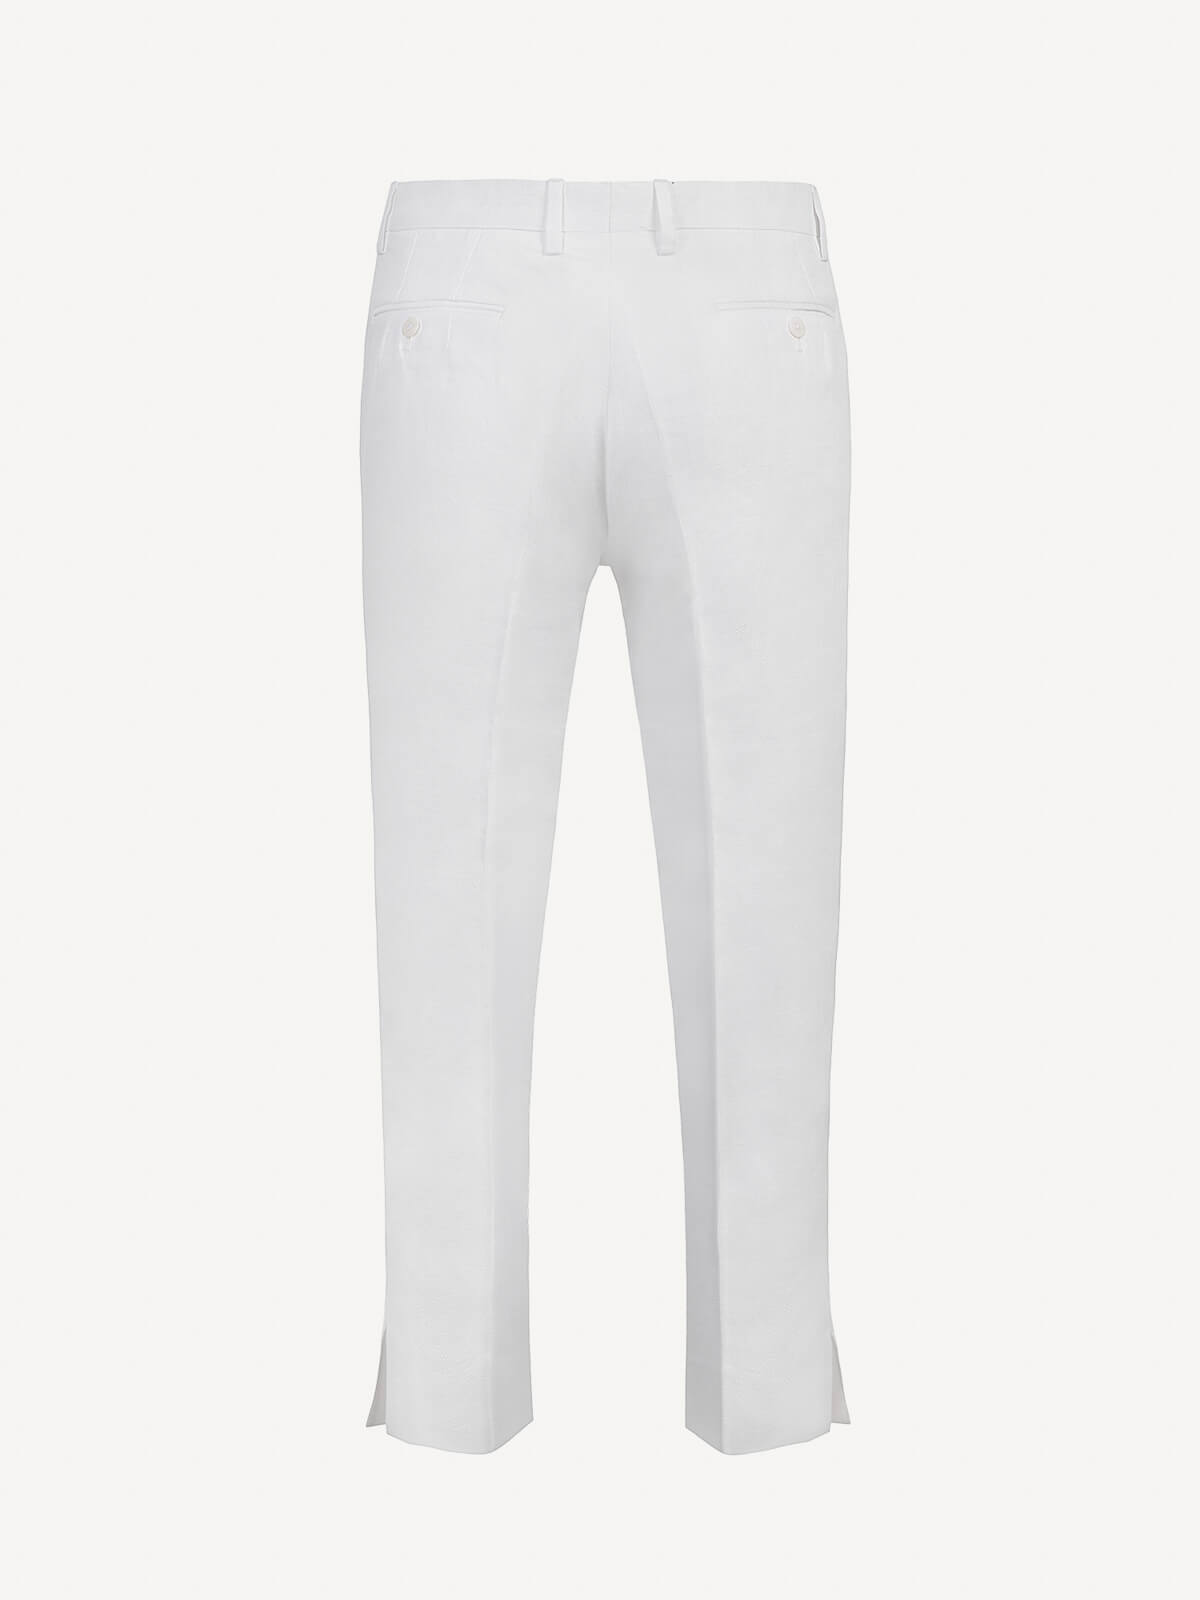 Pantalone New Capri  for woman  100% Capri white linen pant back